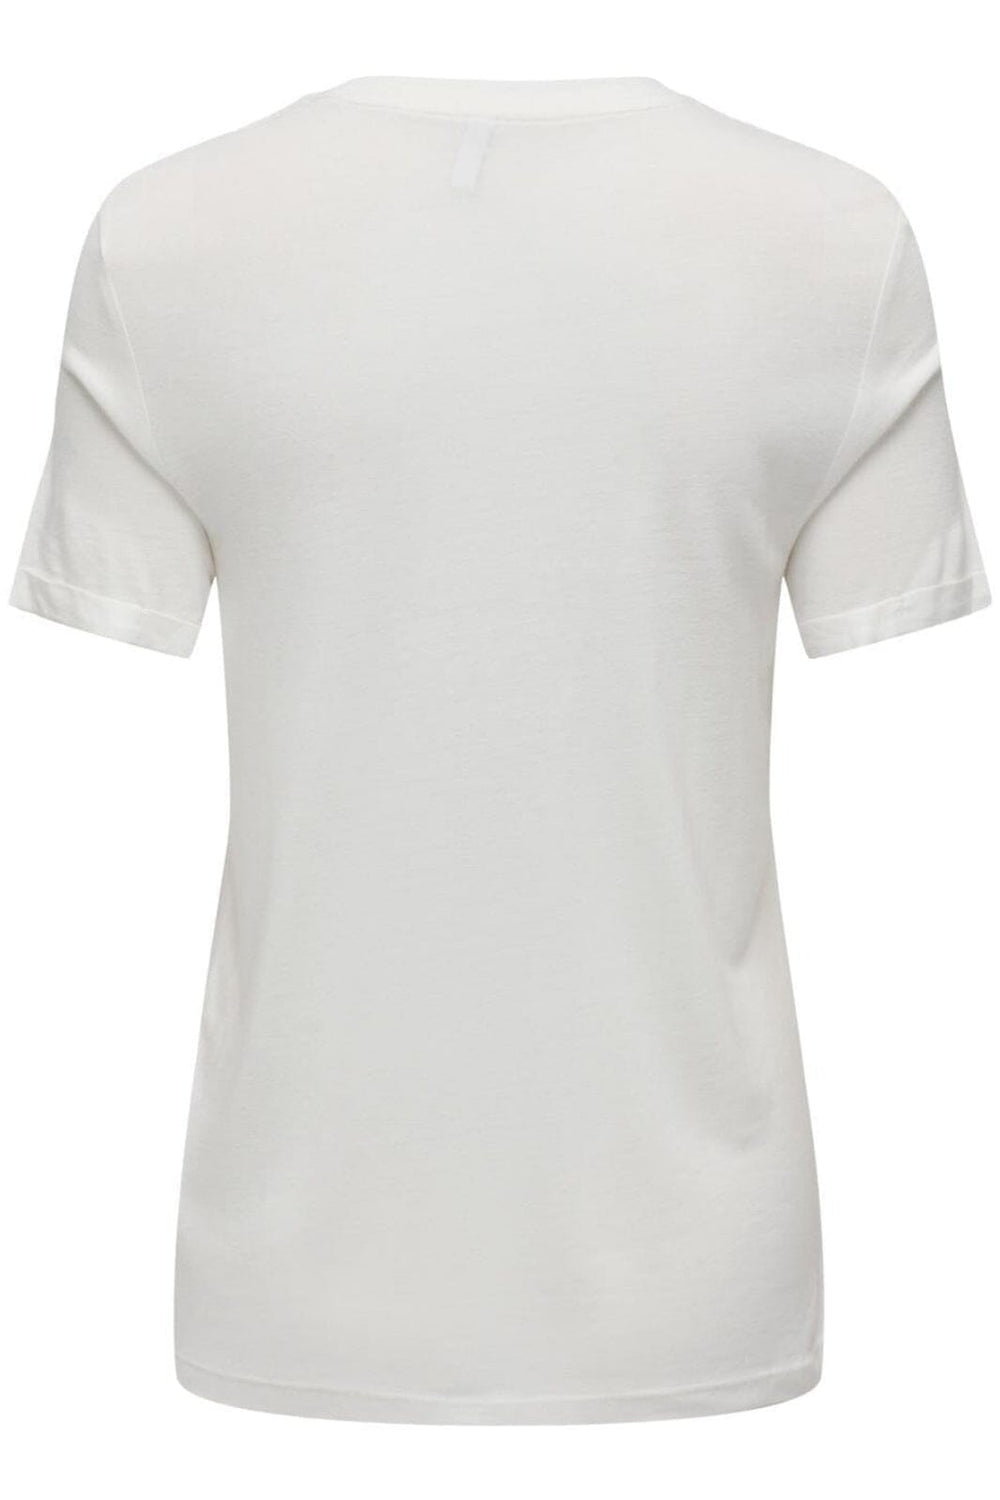 Only - Onlnina S/S Fold-Up Top Box - 4434801 Cloud Dancer Paris T-shirts 